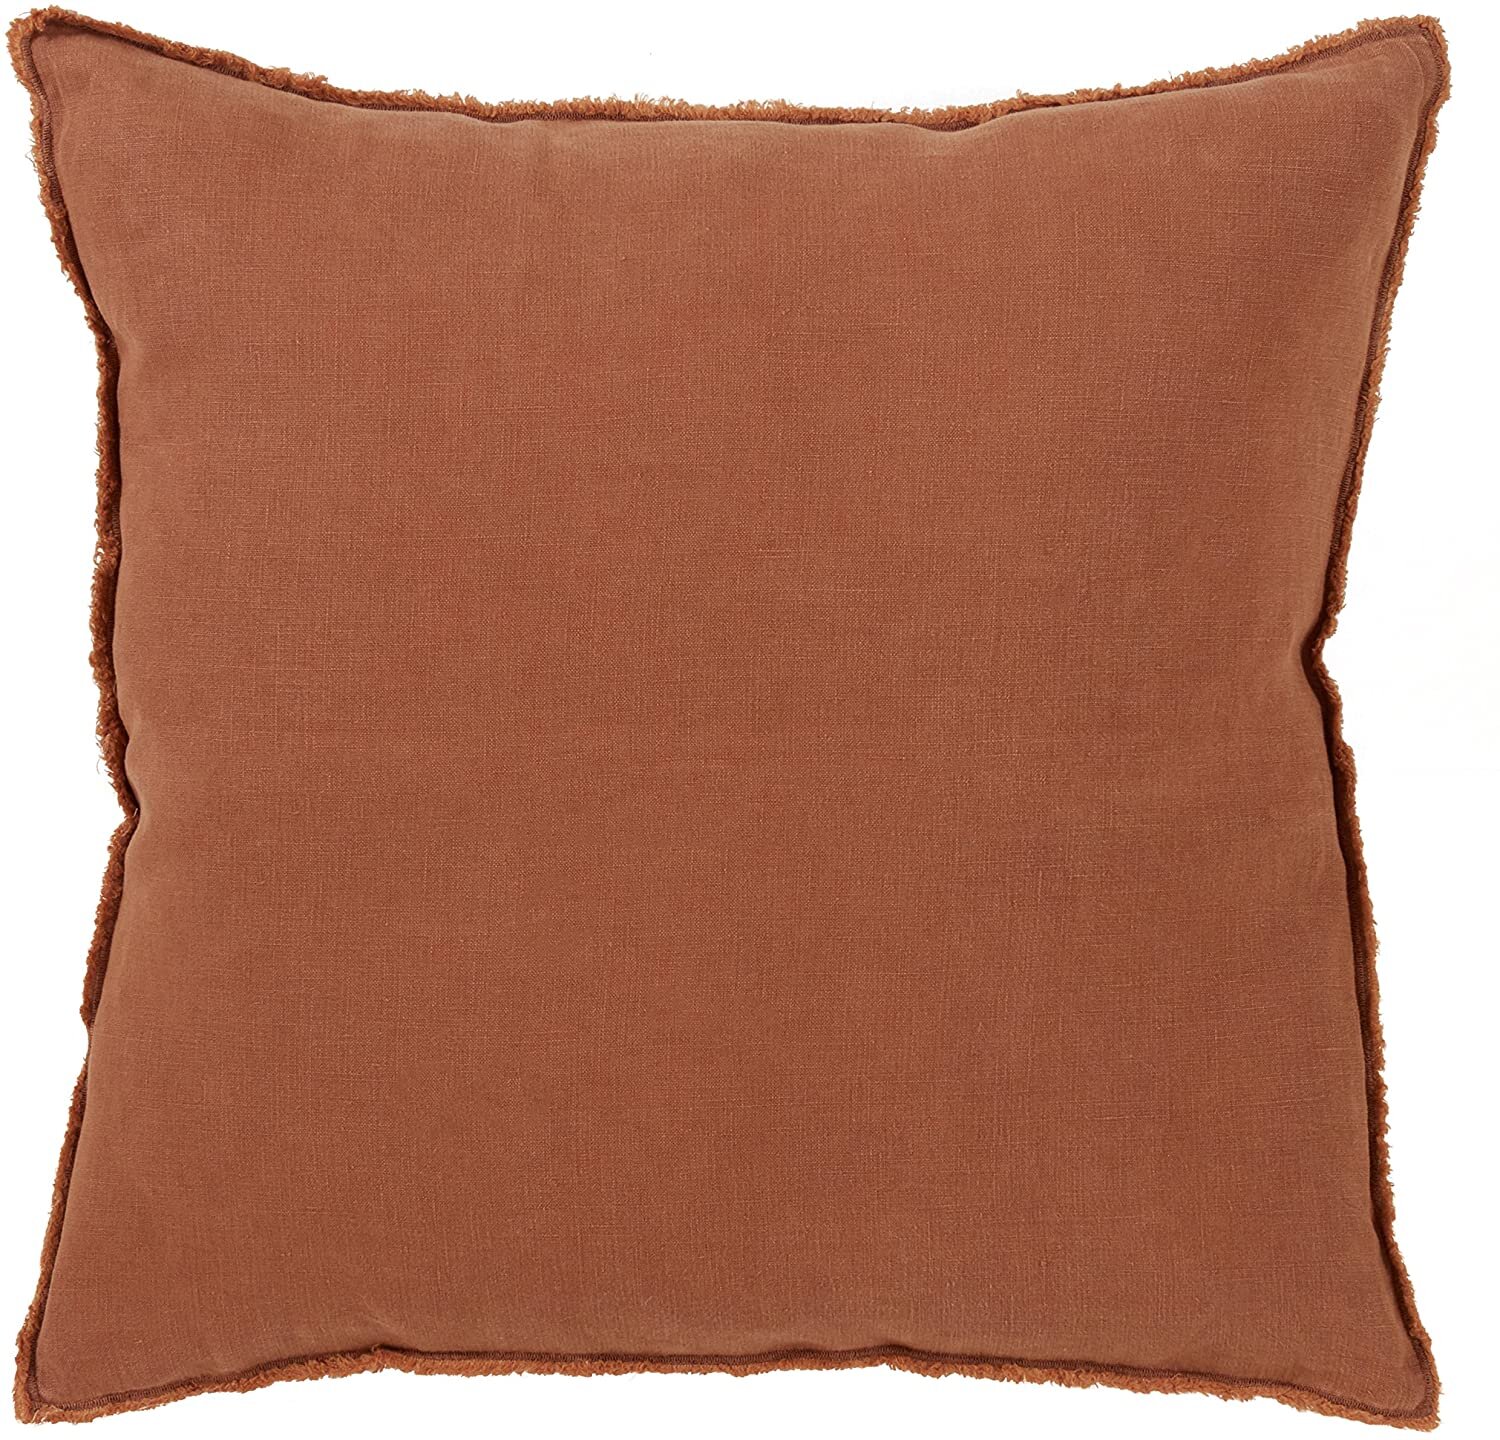 Terracotta Fringed Pillow